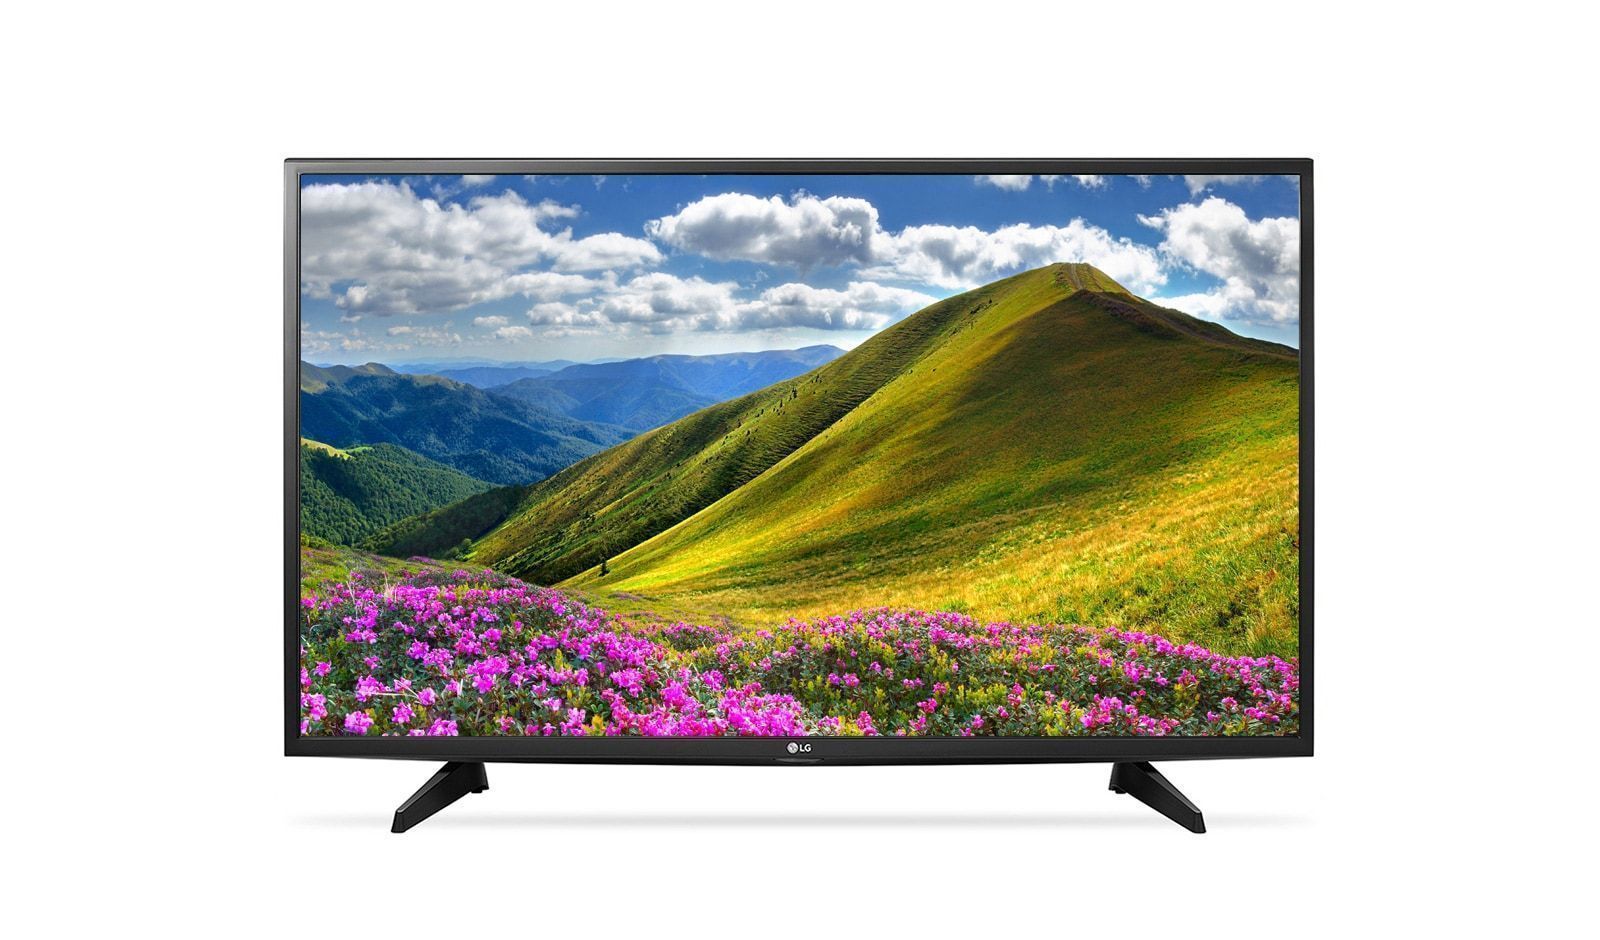 Телевизор купить минск цена. 32lg510u. Телевизор LG 43lj510v. LG 32lf510u. ЖК телевизор LG 32lj510u.